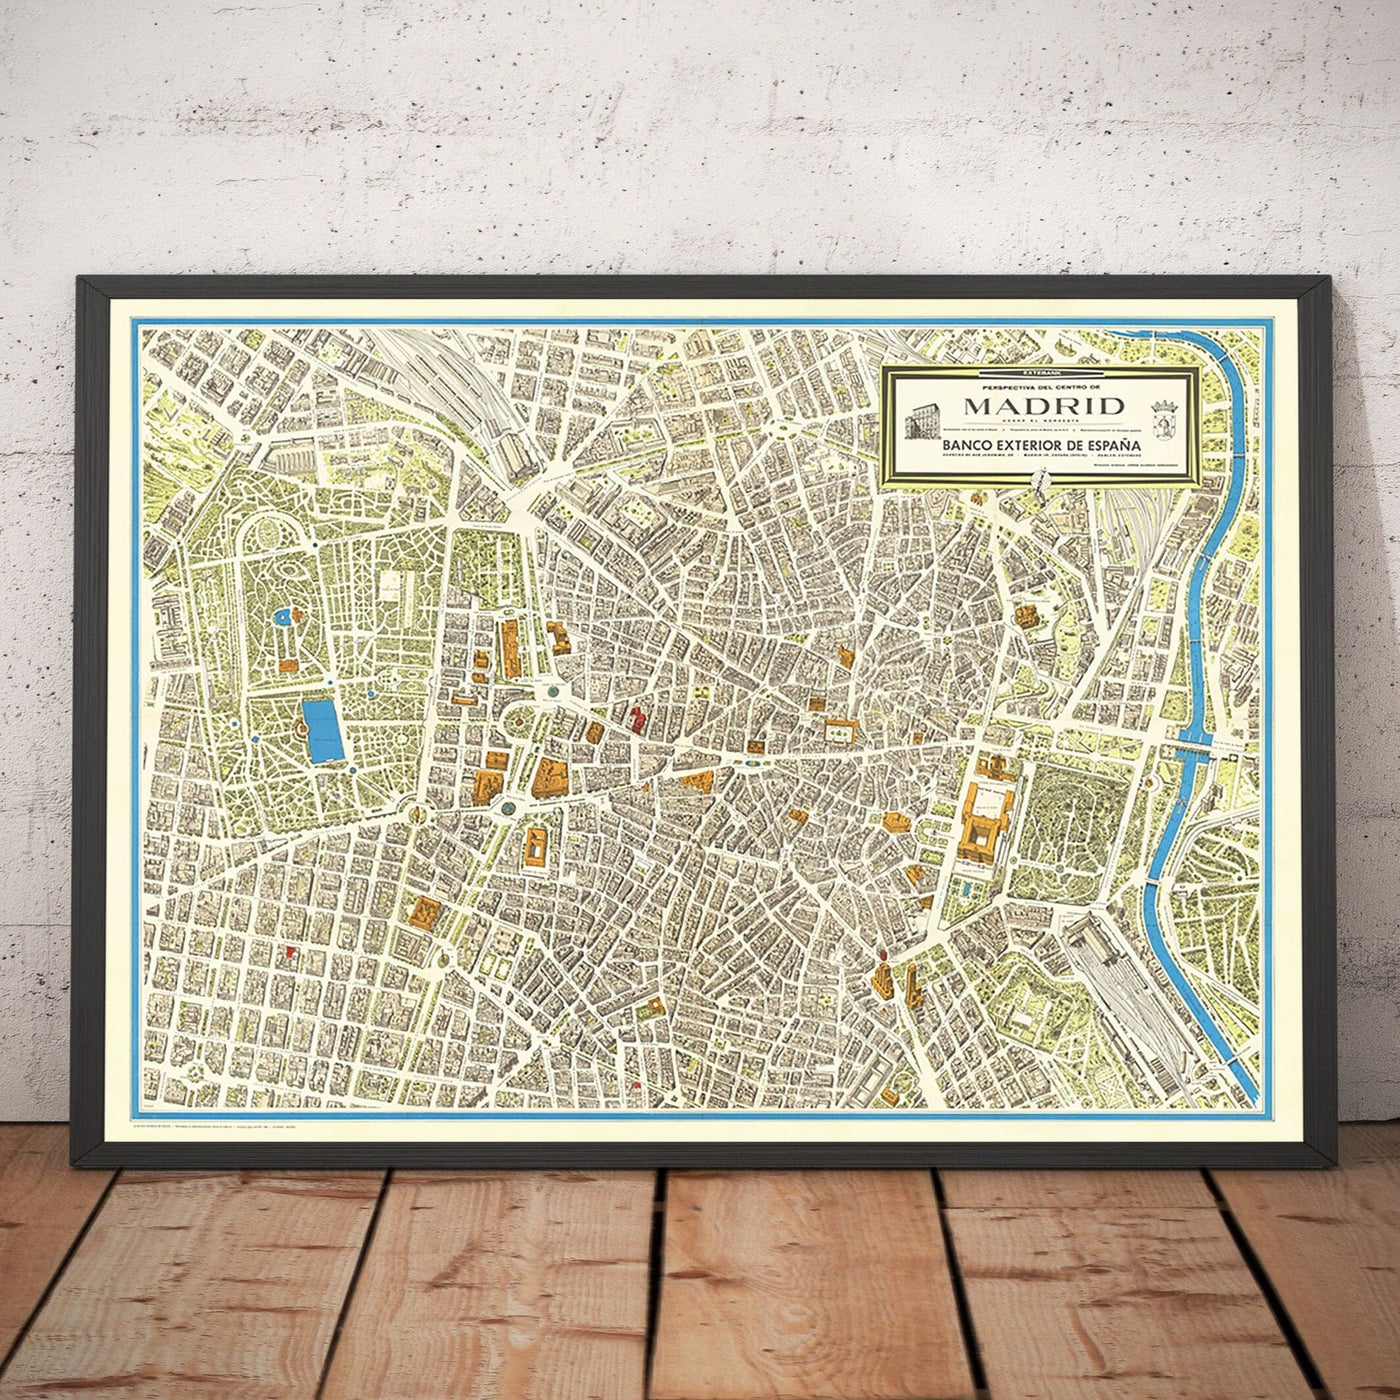 Mapa antiguo de Madrid, 1966 por Hernández - Palacio Real, Teatro Real, Museo Nacional, Plaza Mayor, El Retiro, Palacio de Cristal